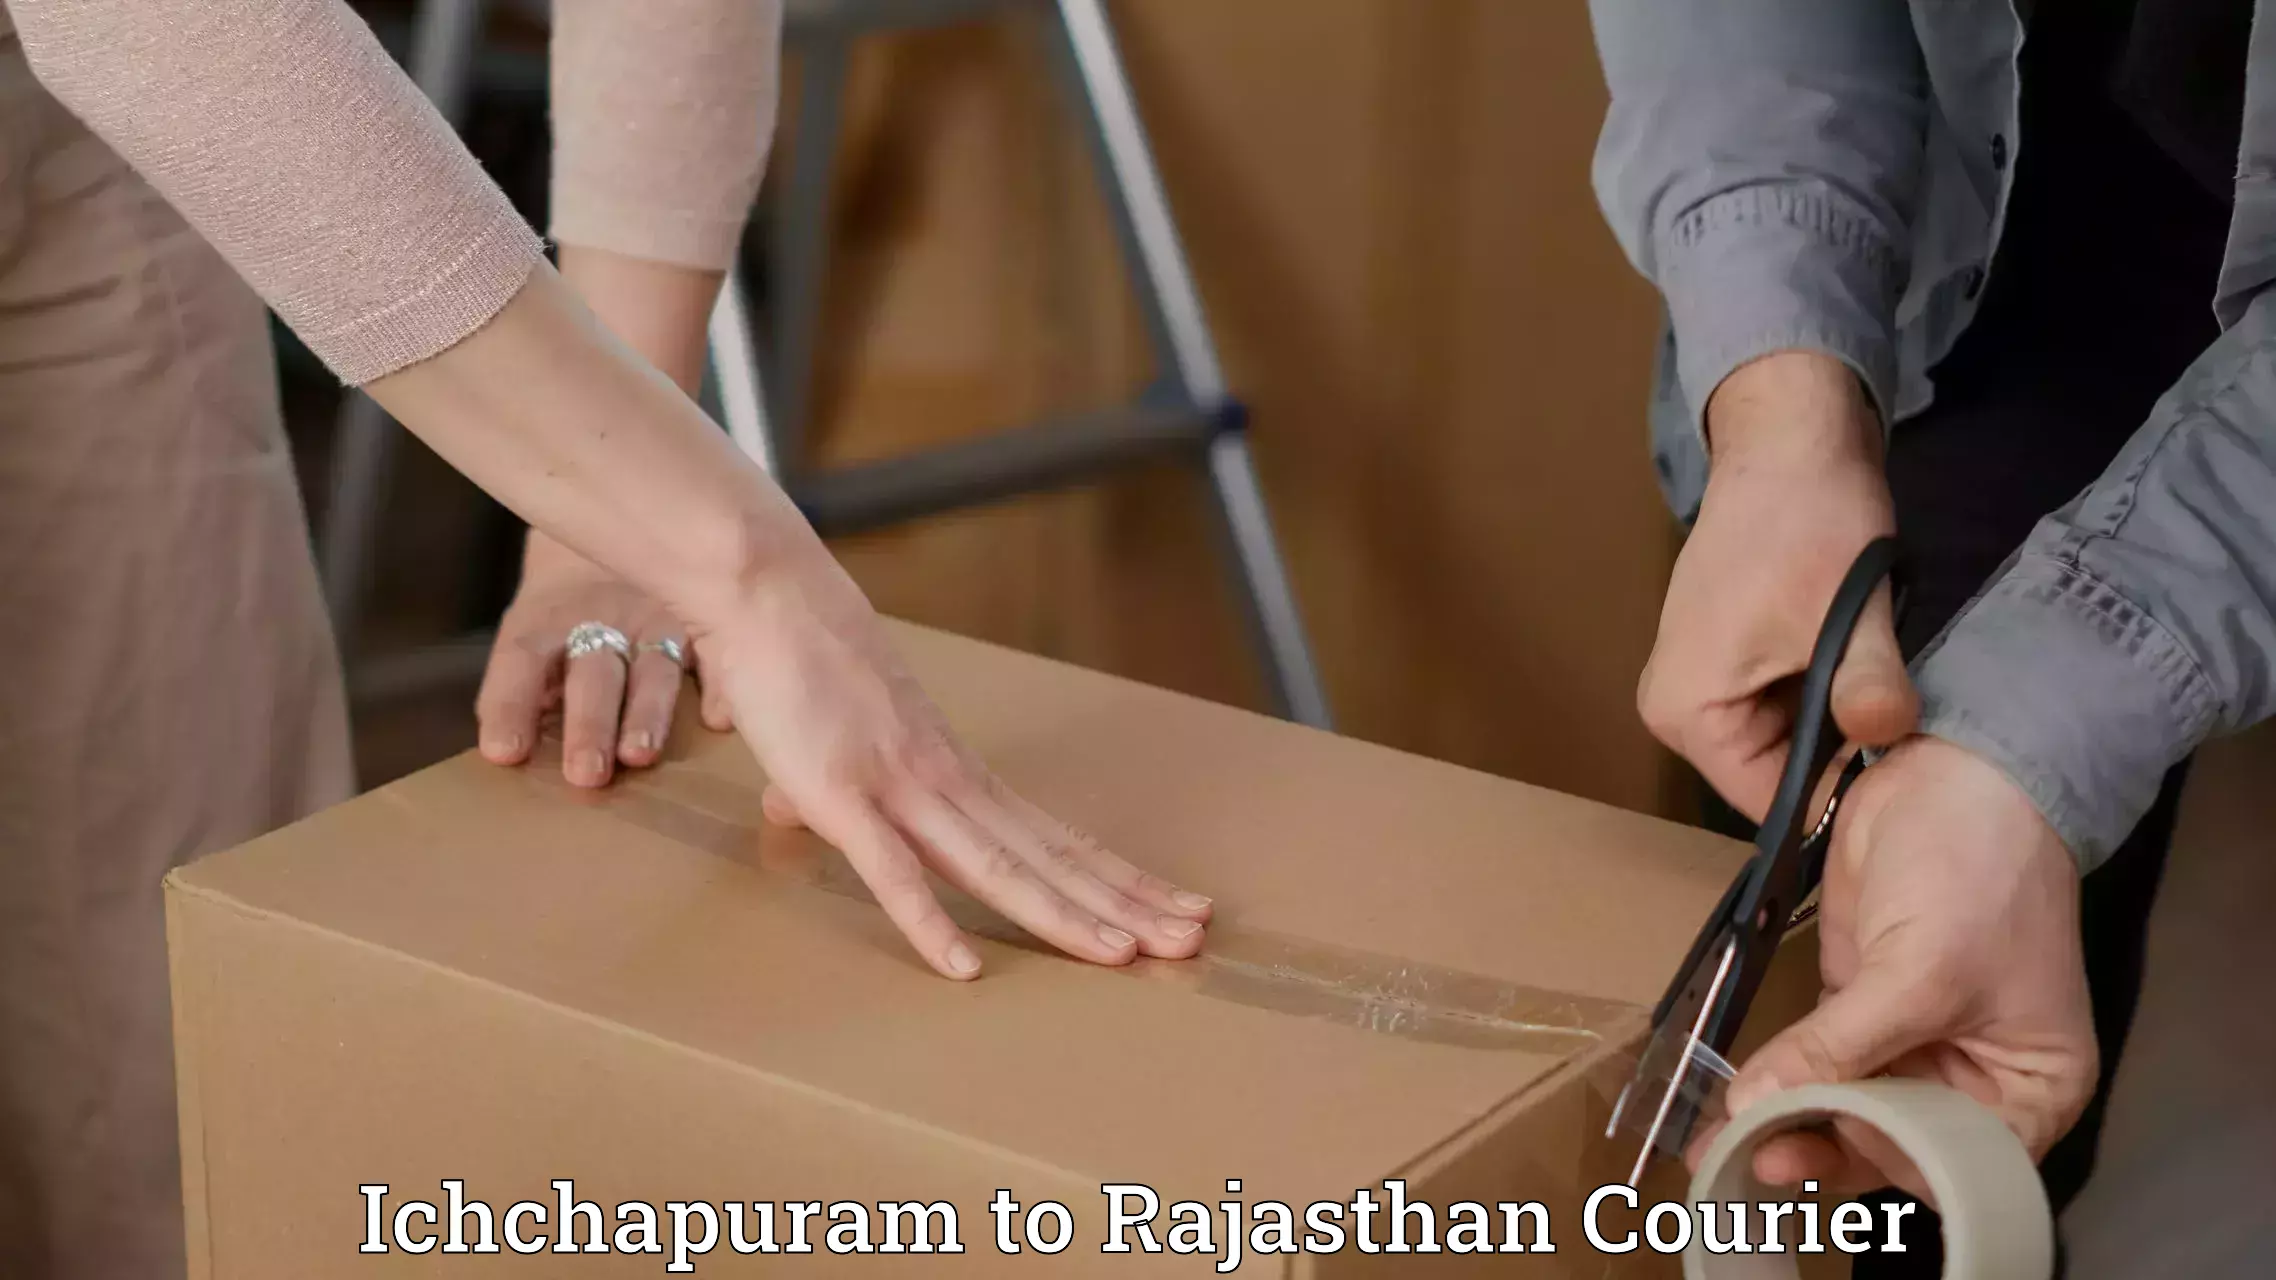 Courier service partnerships Ichchapuram to Rajasthan